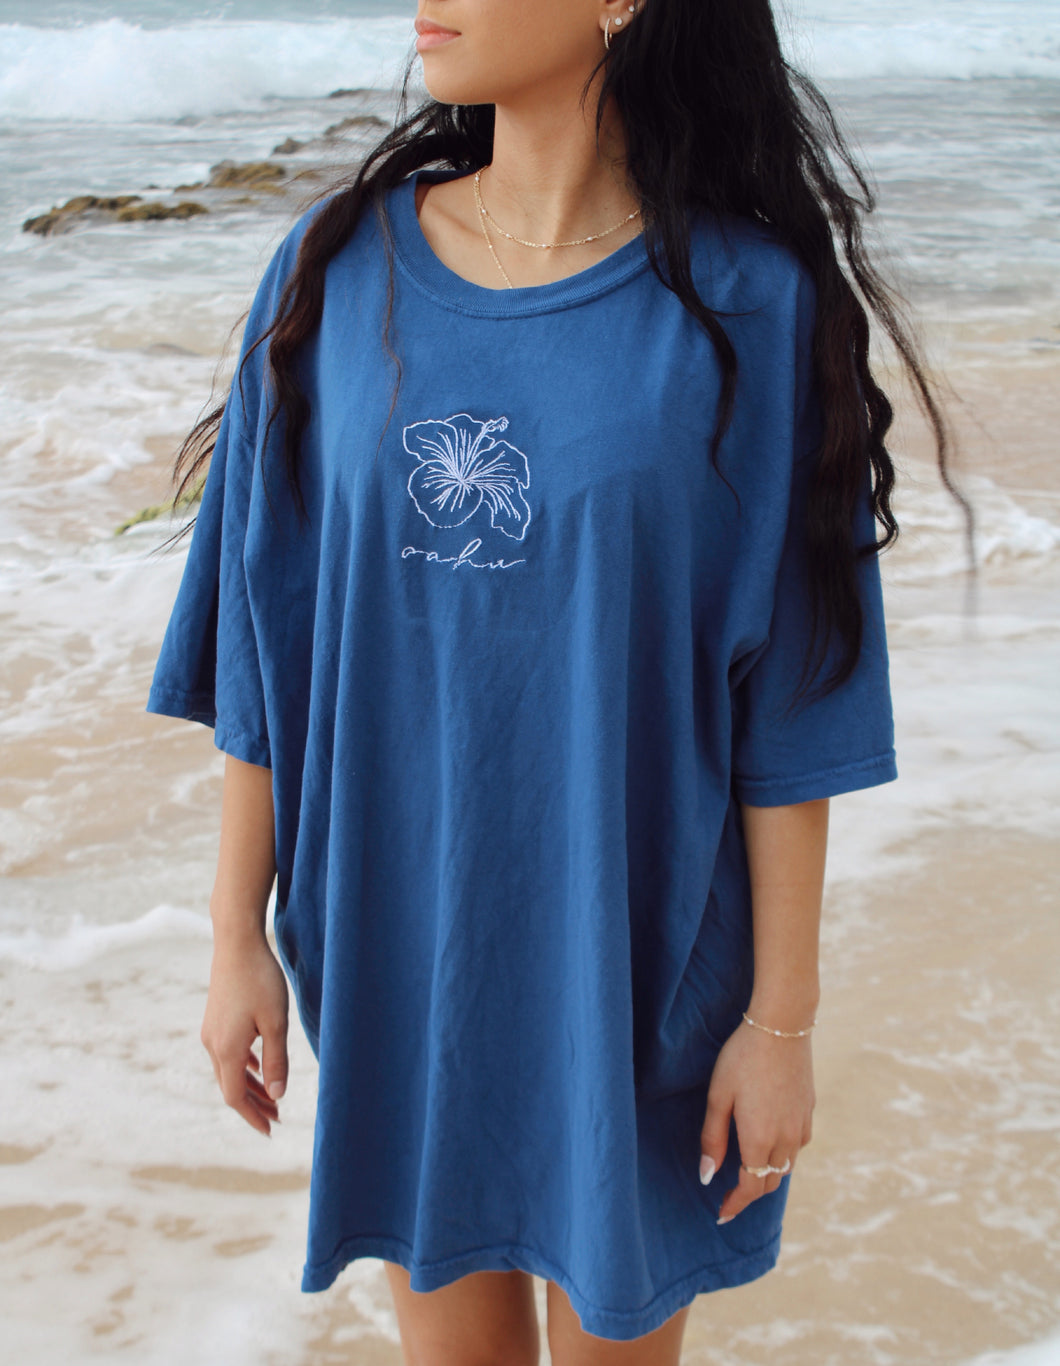 Hibiscus Oahu Tee - Indigo Blue